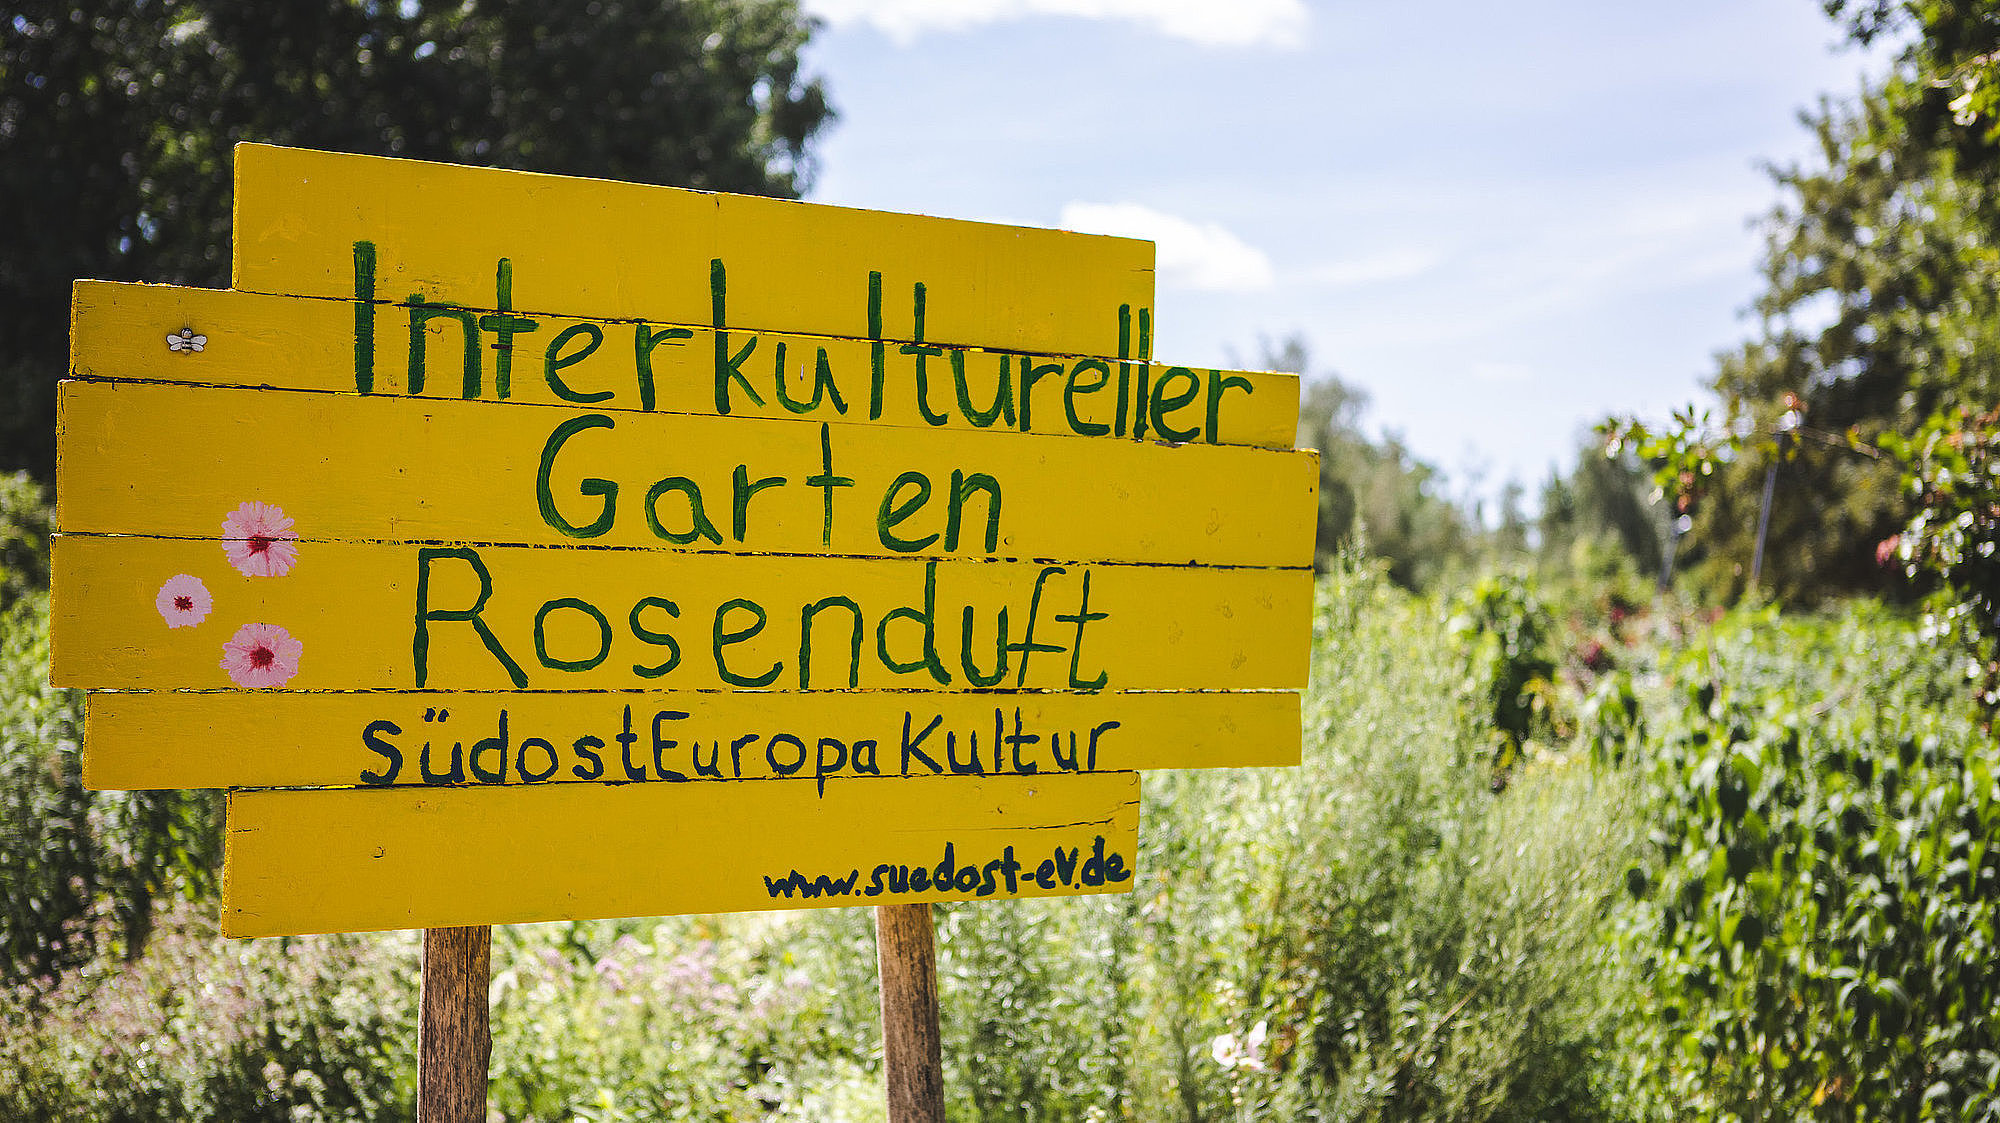 In grüner Schrift steht auf einem gelben Holzschild "Interkultureller Garten Rosenduft"